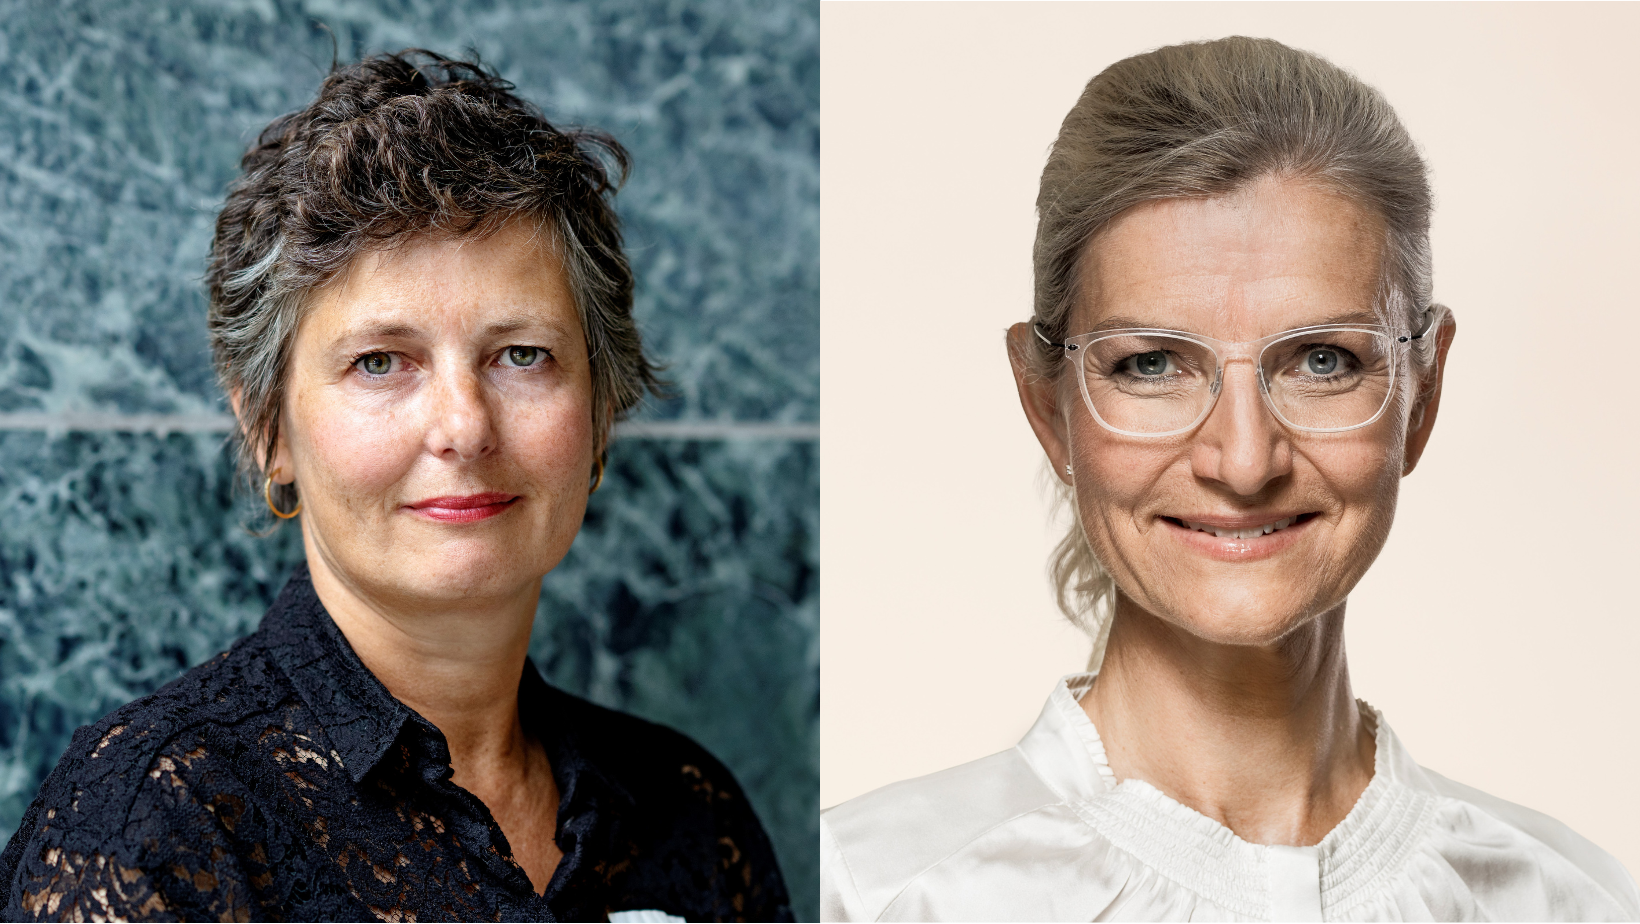 Ulla Tørnæs og Camilla Bjerre Damgaard